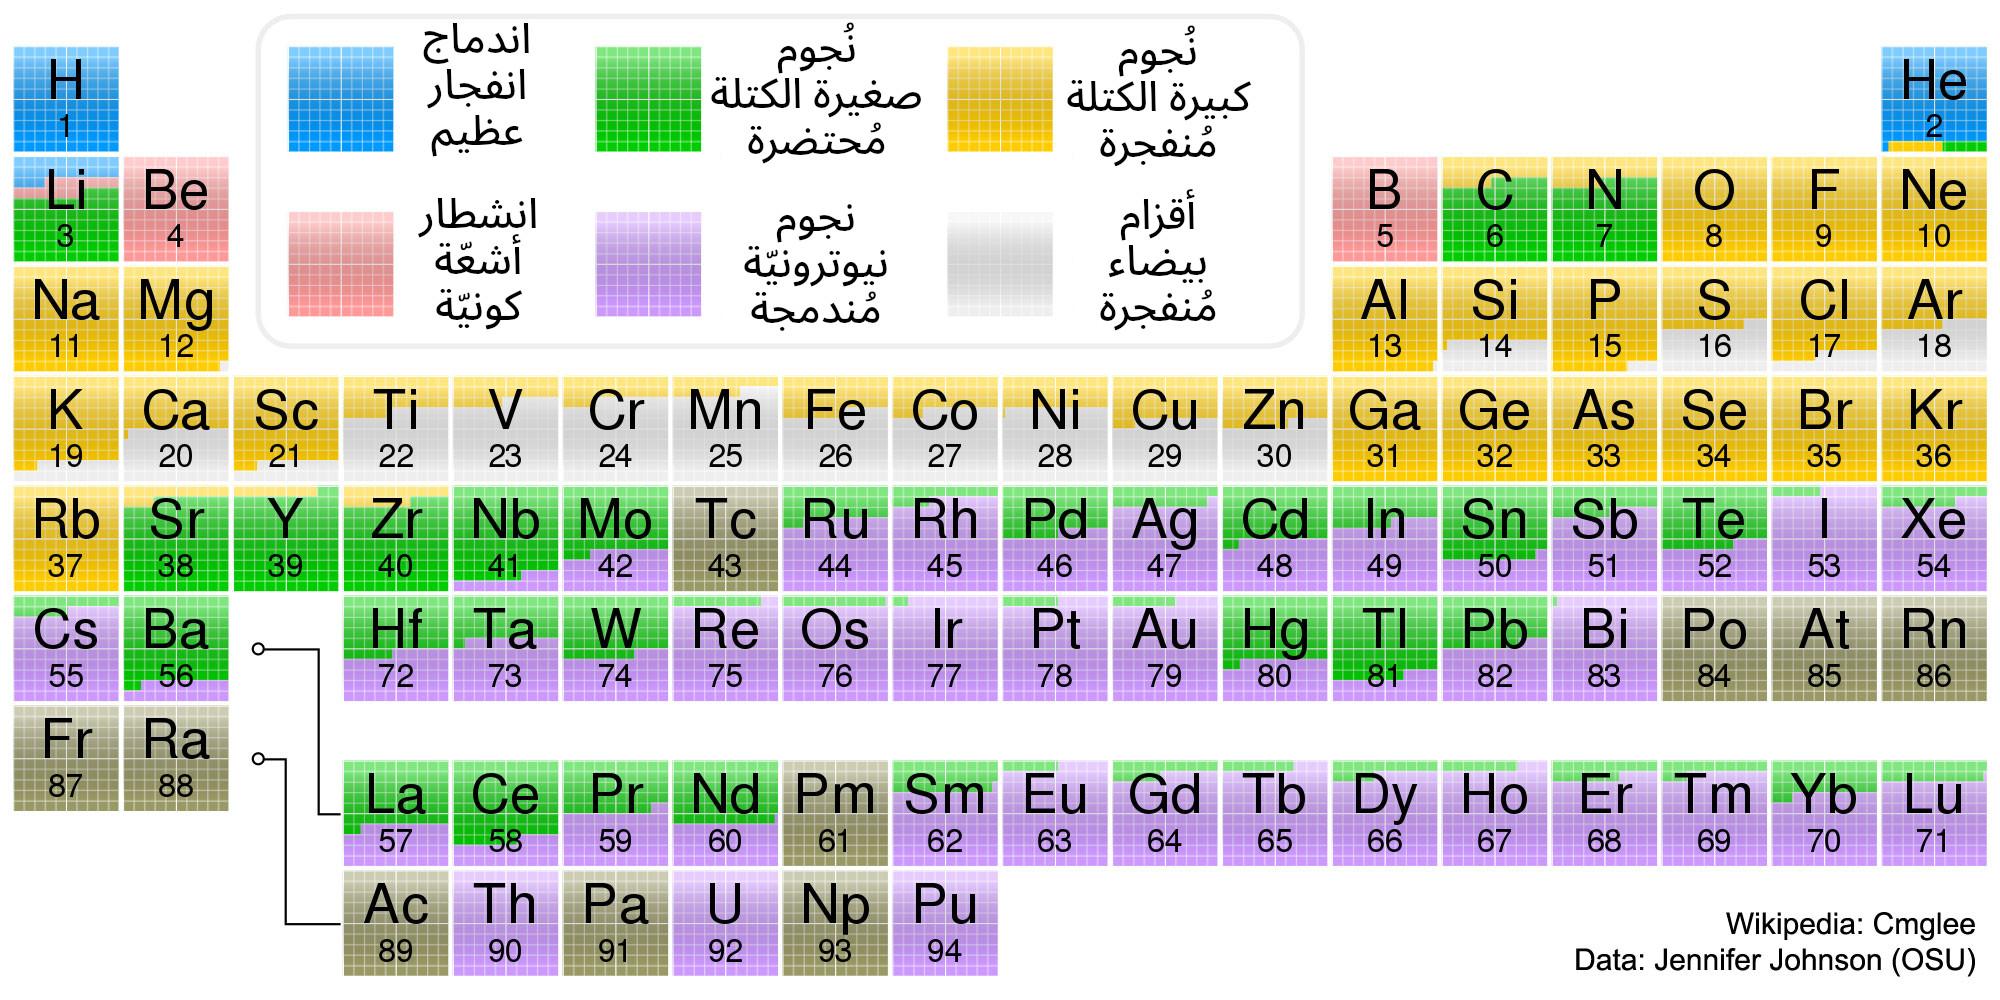 نسخة من جدول العناصر الدوري مُرمّز لونيّاً بالمنشأ المُعتَقد لكلّ عنصر